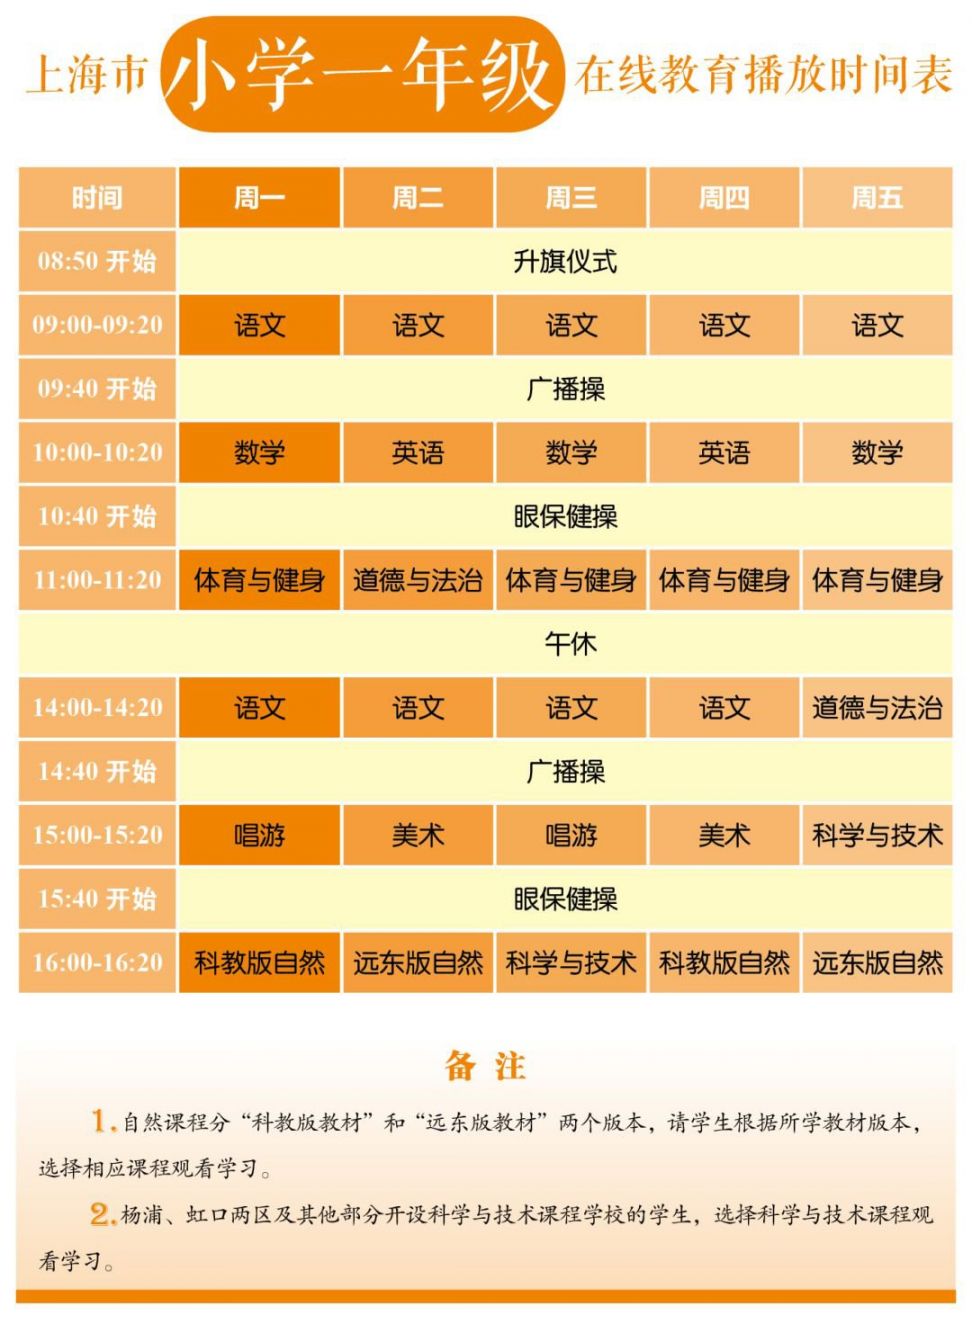 2020上海中小学各年级在线教育时间表公布